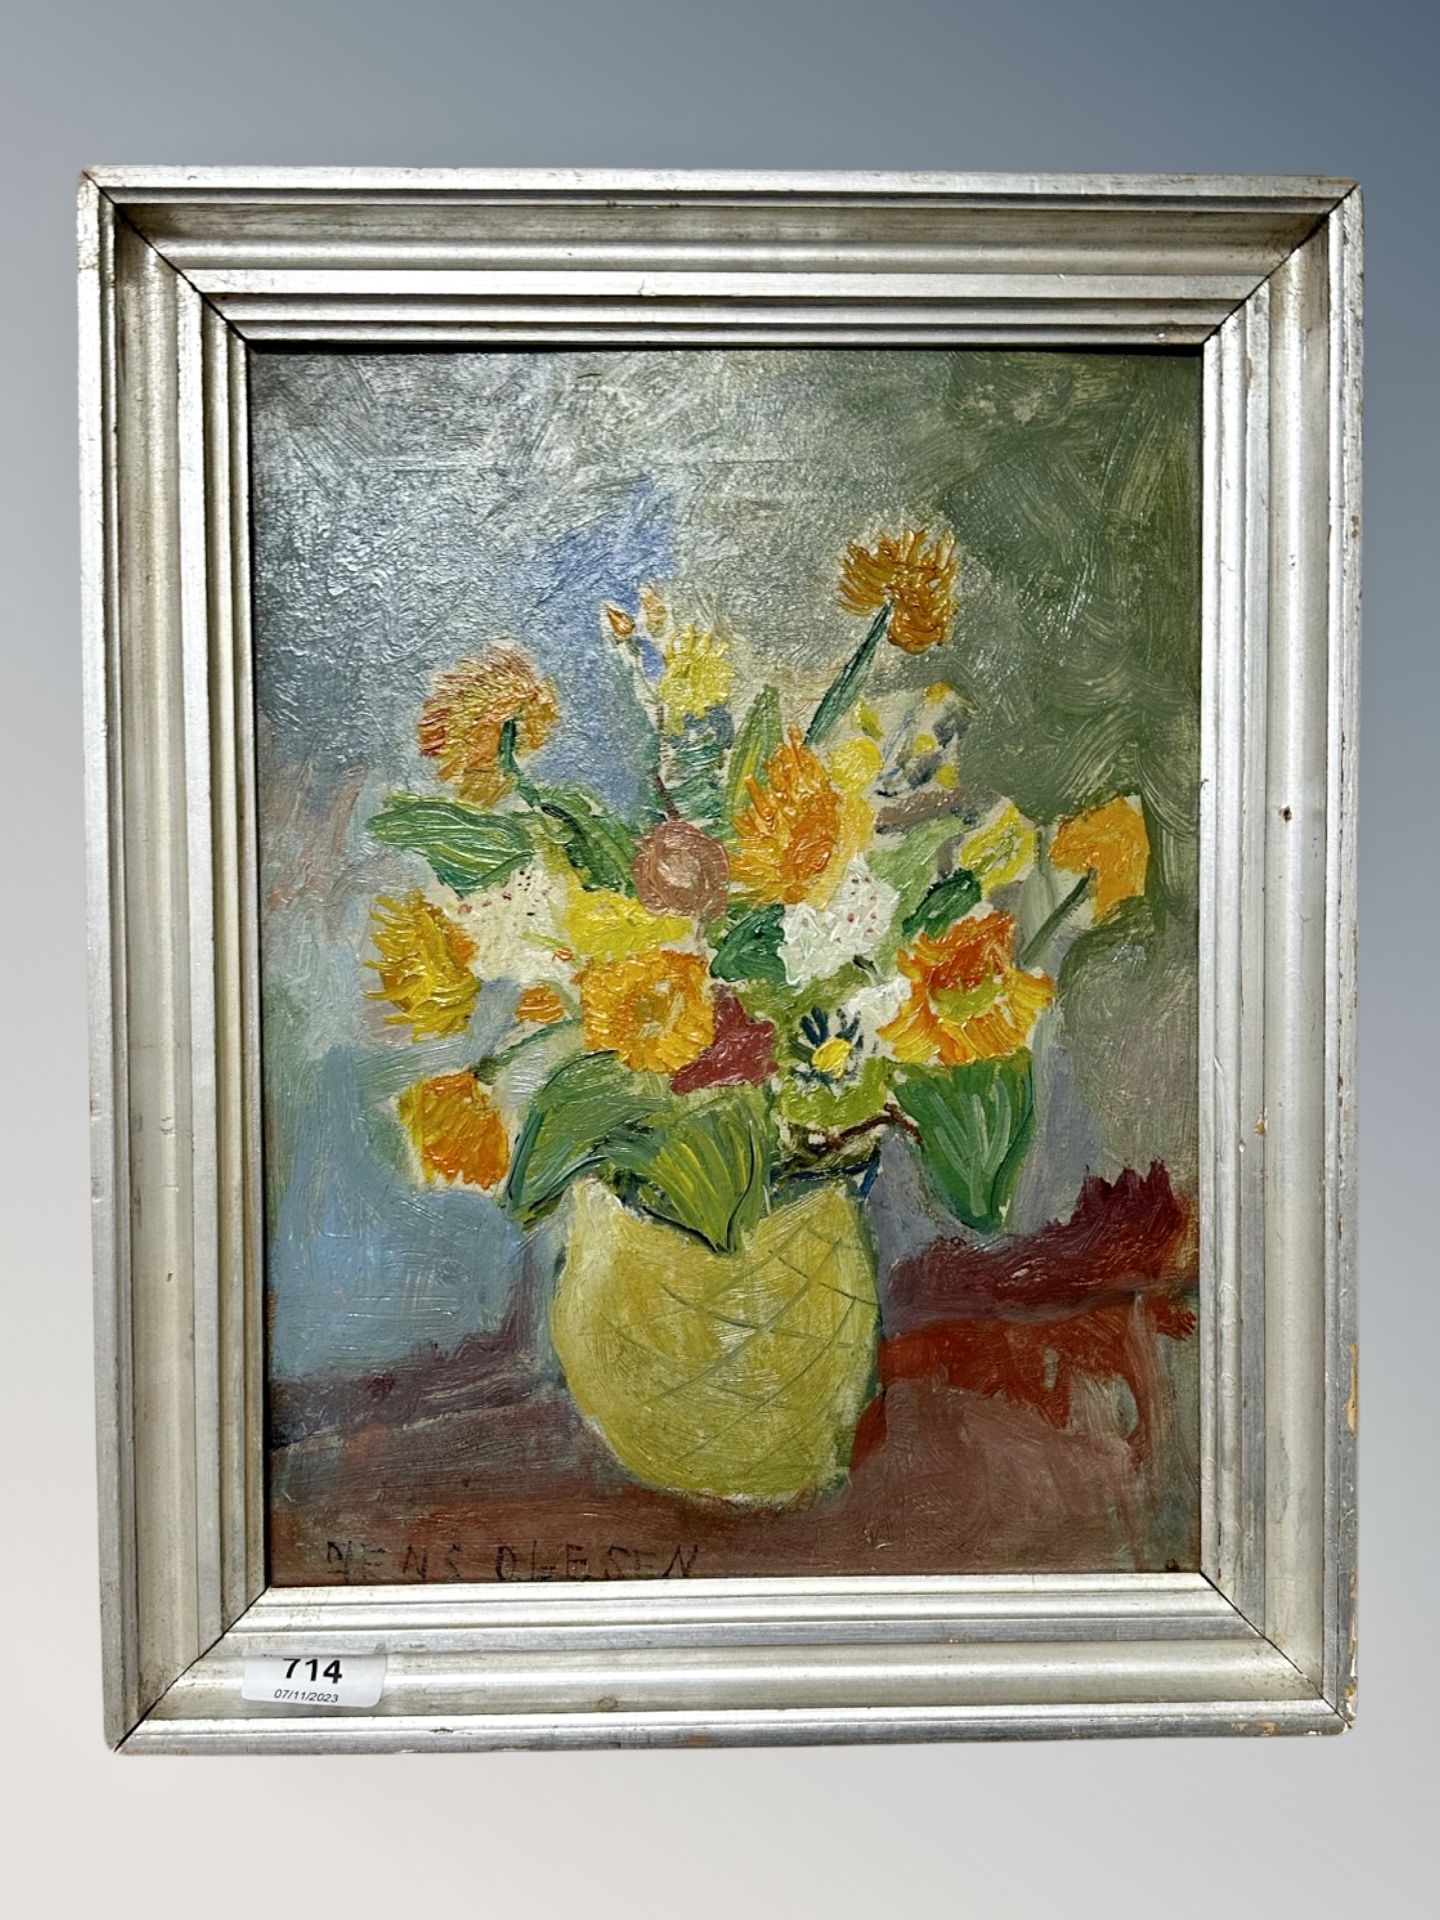 Yens Olsen : Still life of flowers in a vase, oil on board,